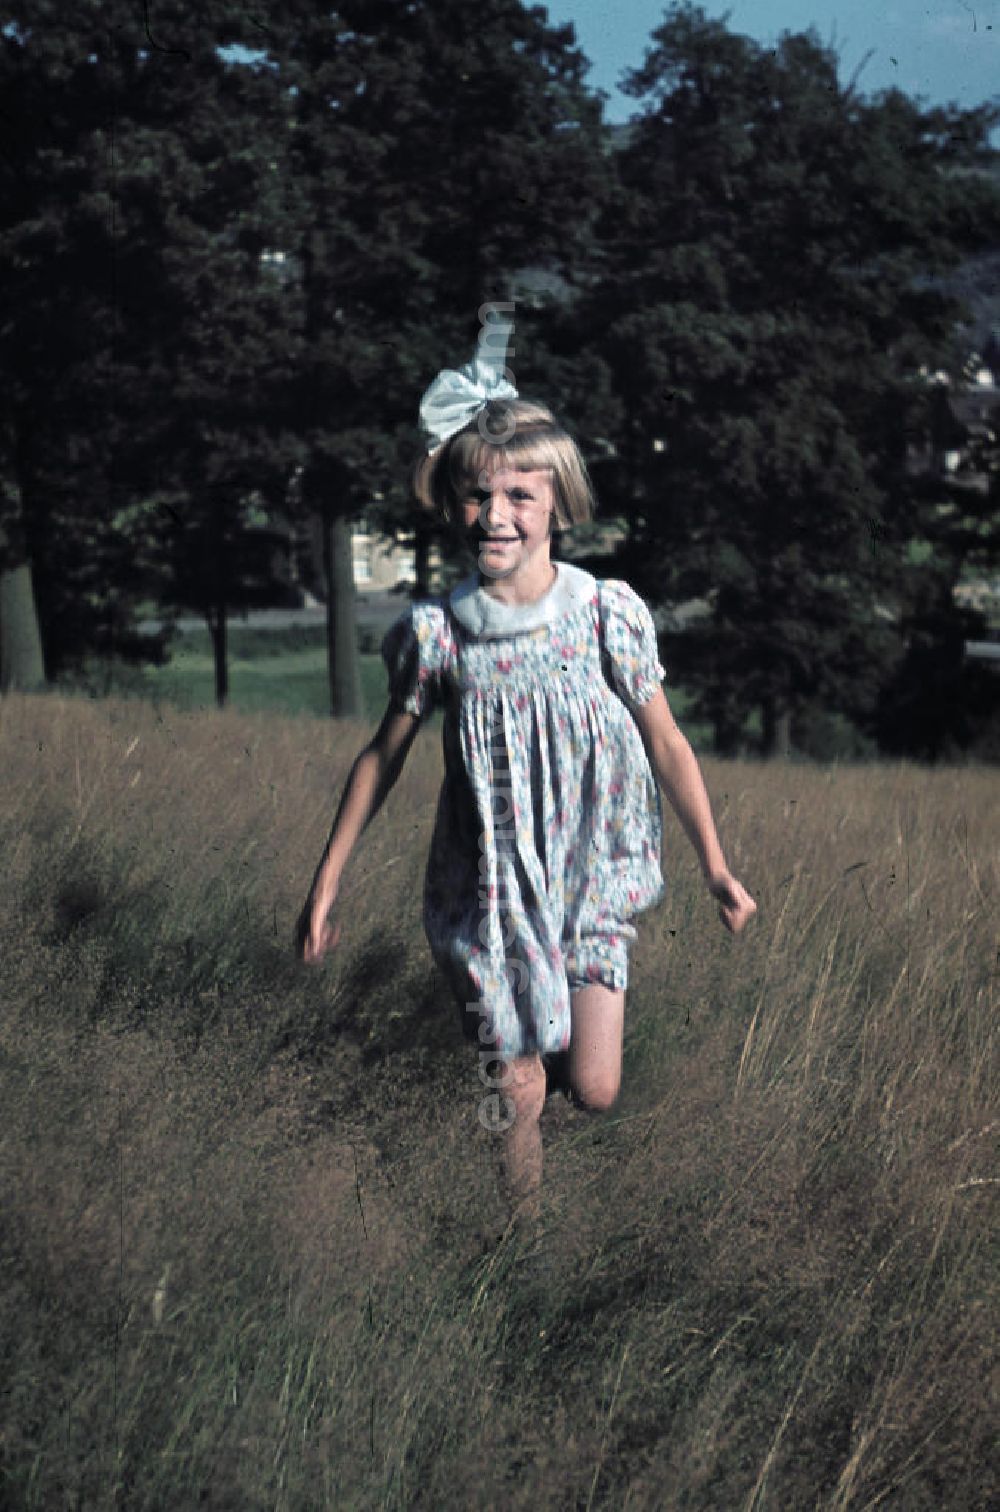 GDR photo archive: Siegen - Ein Mädchen mit Kleid und Schleife im Haar spielt. A girl with a dress is playing.